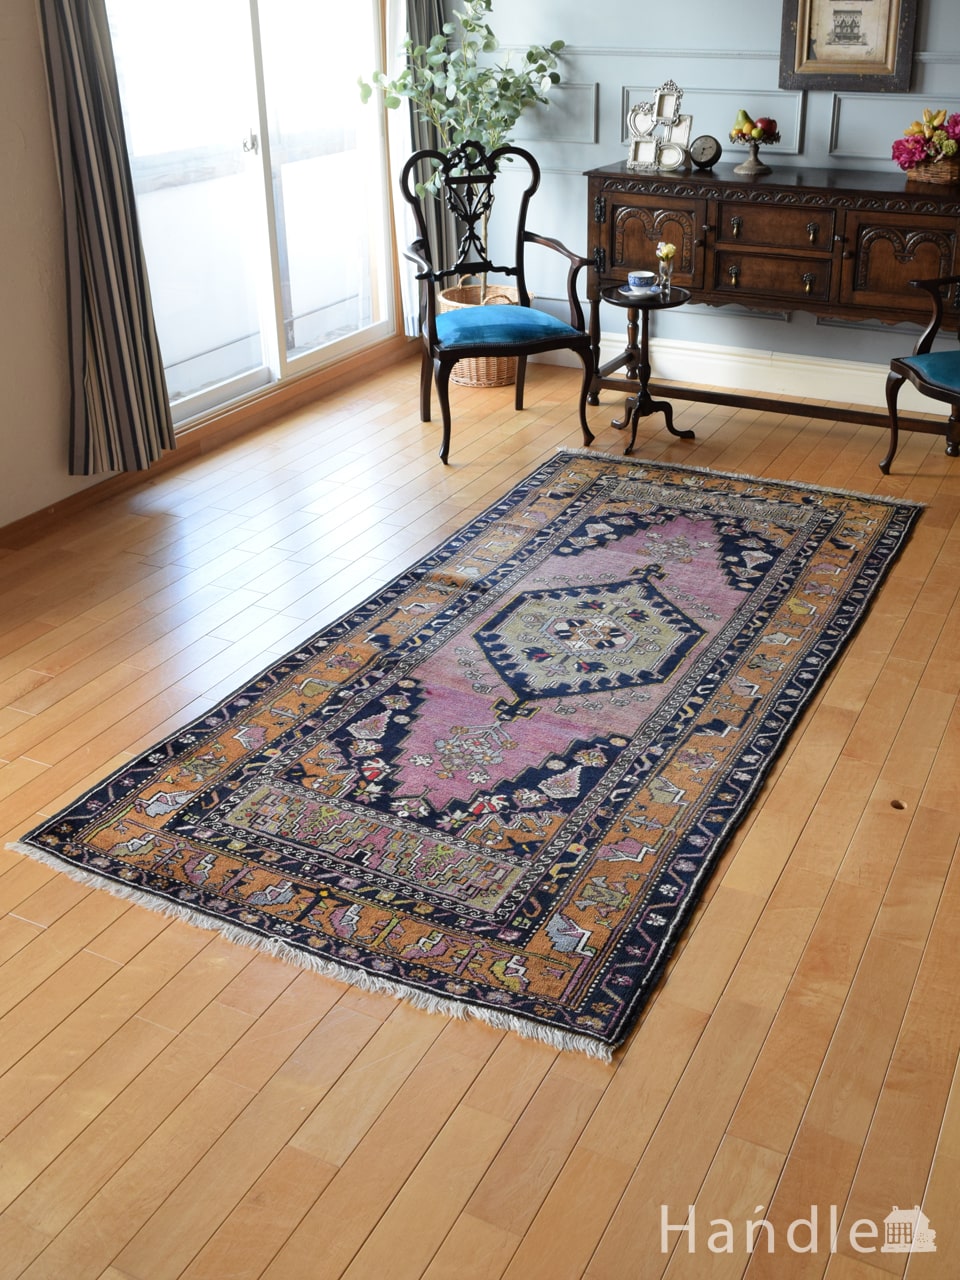 トルコアクサライのおしゃれな絨毯、一点もののビンテージトライバル